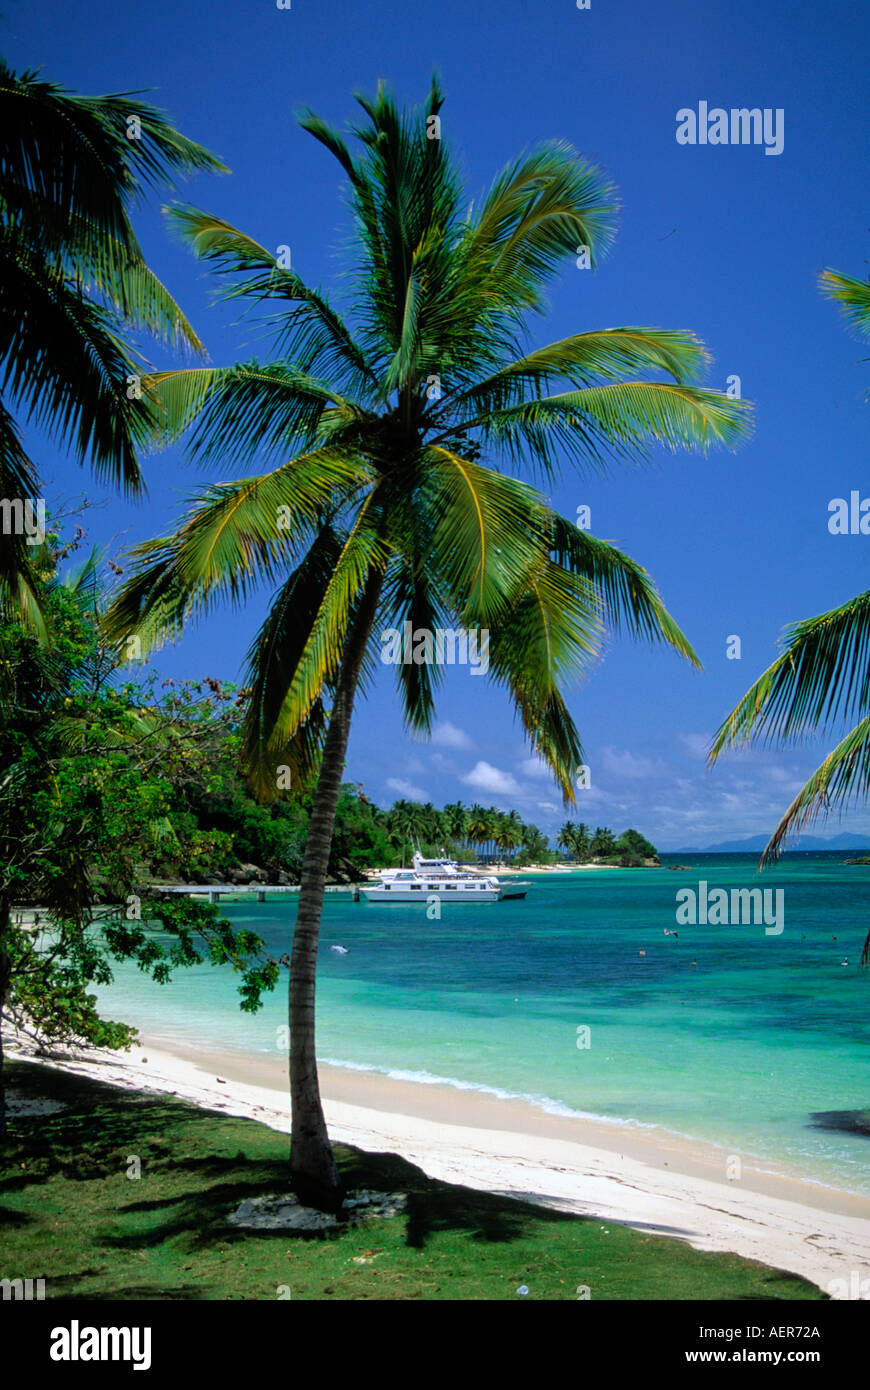 Playa República dominicana archipiélago de las Antillas Mayores del Caribe  Fotografía de stock - Alamy